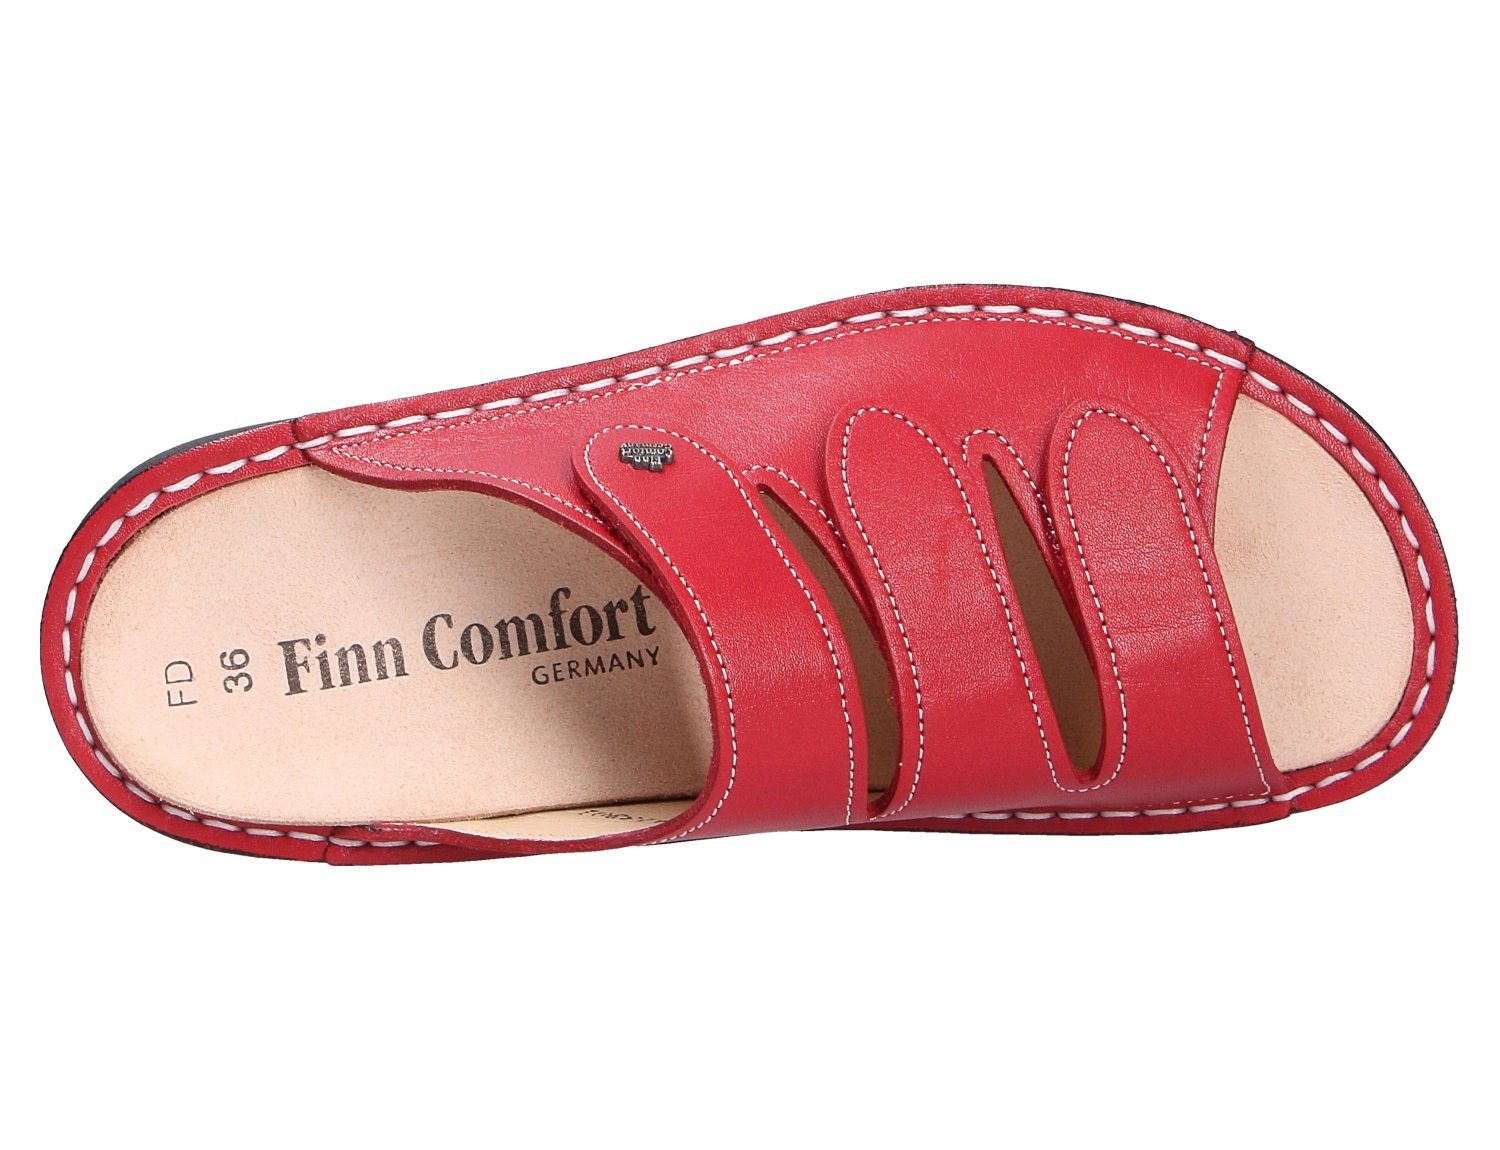 Finn Comfort Pantolette Weicher Gehcomfort